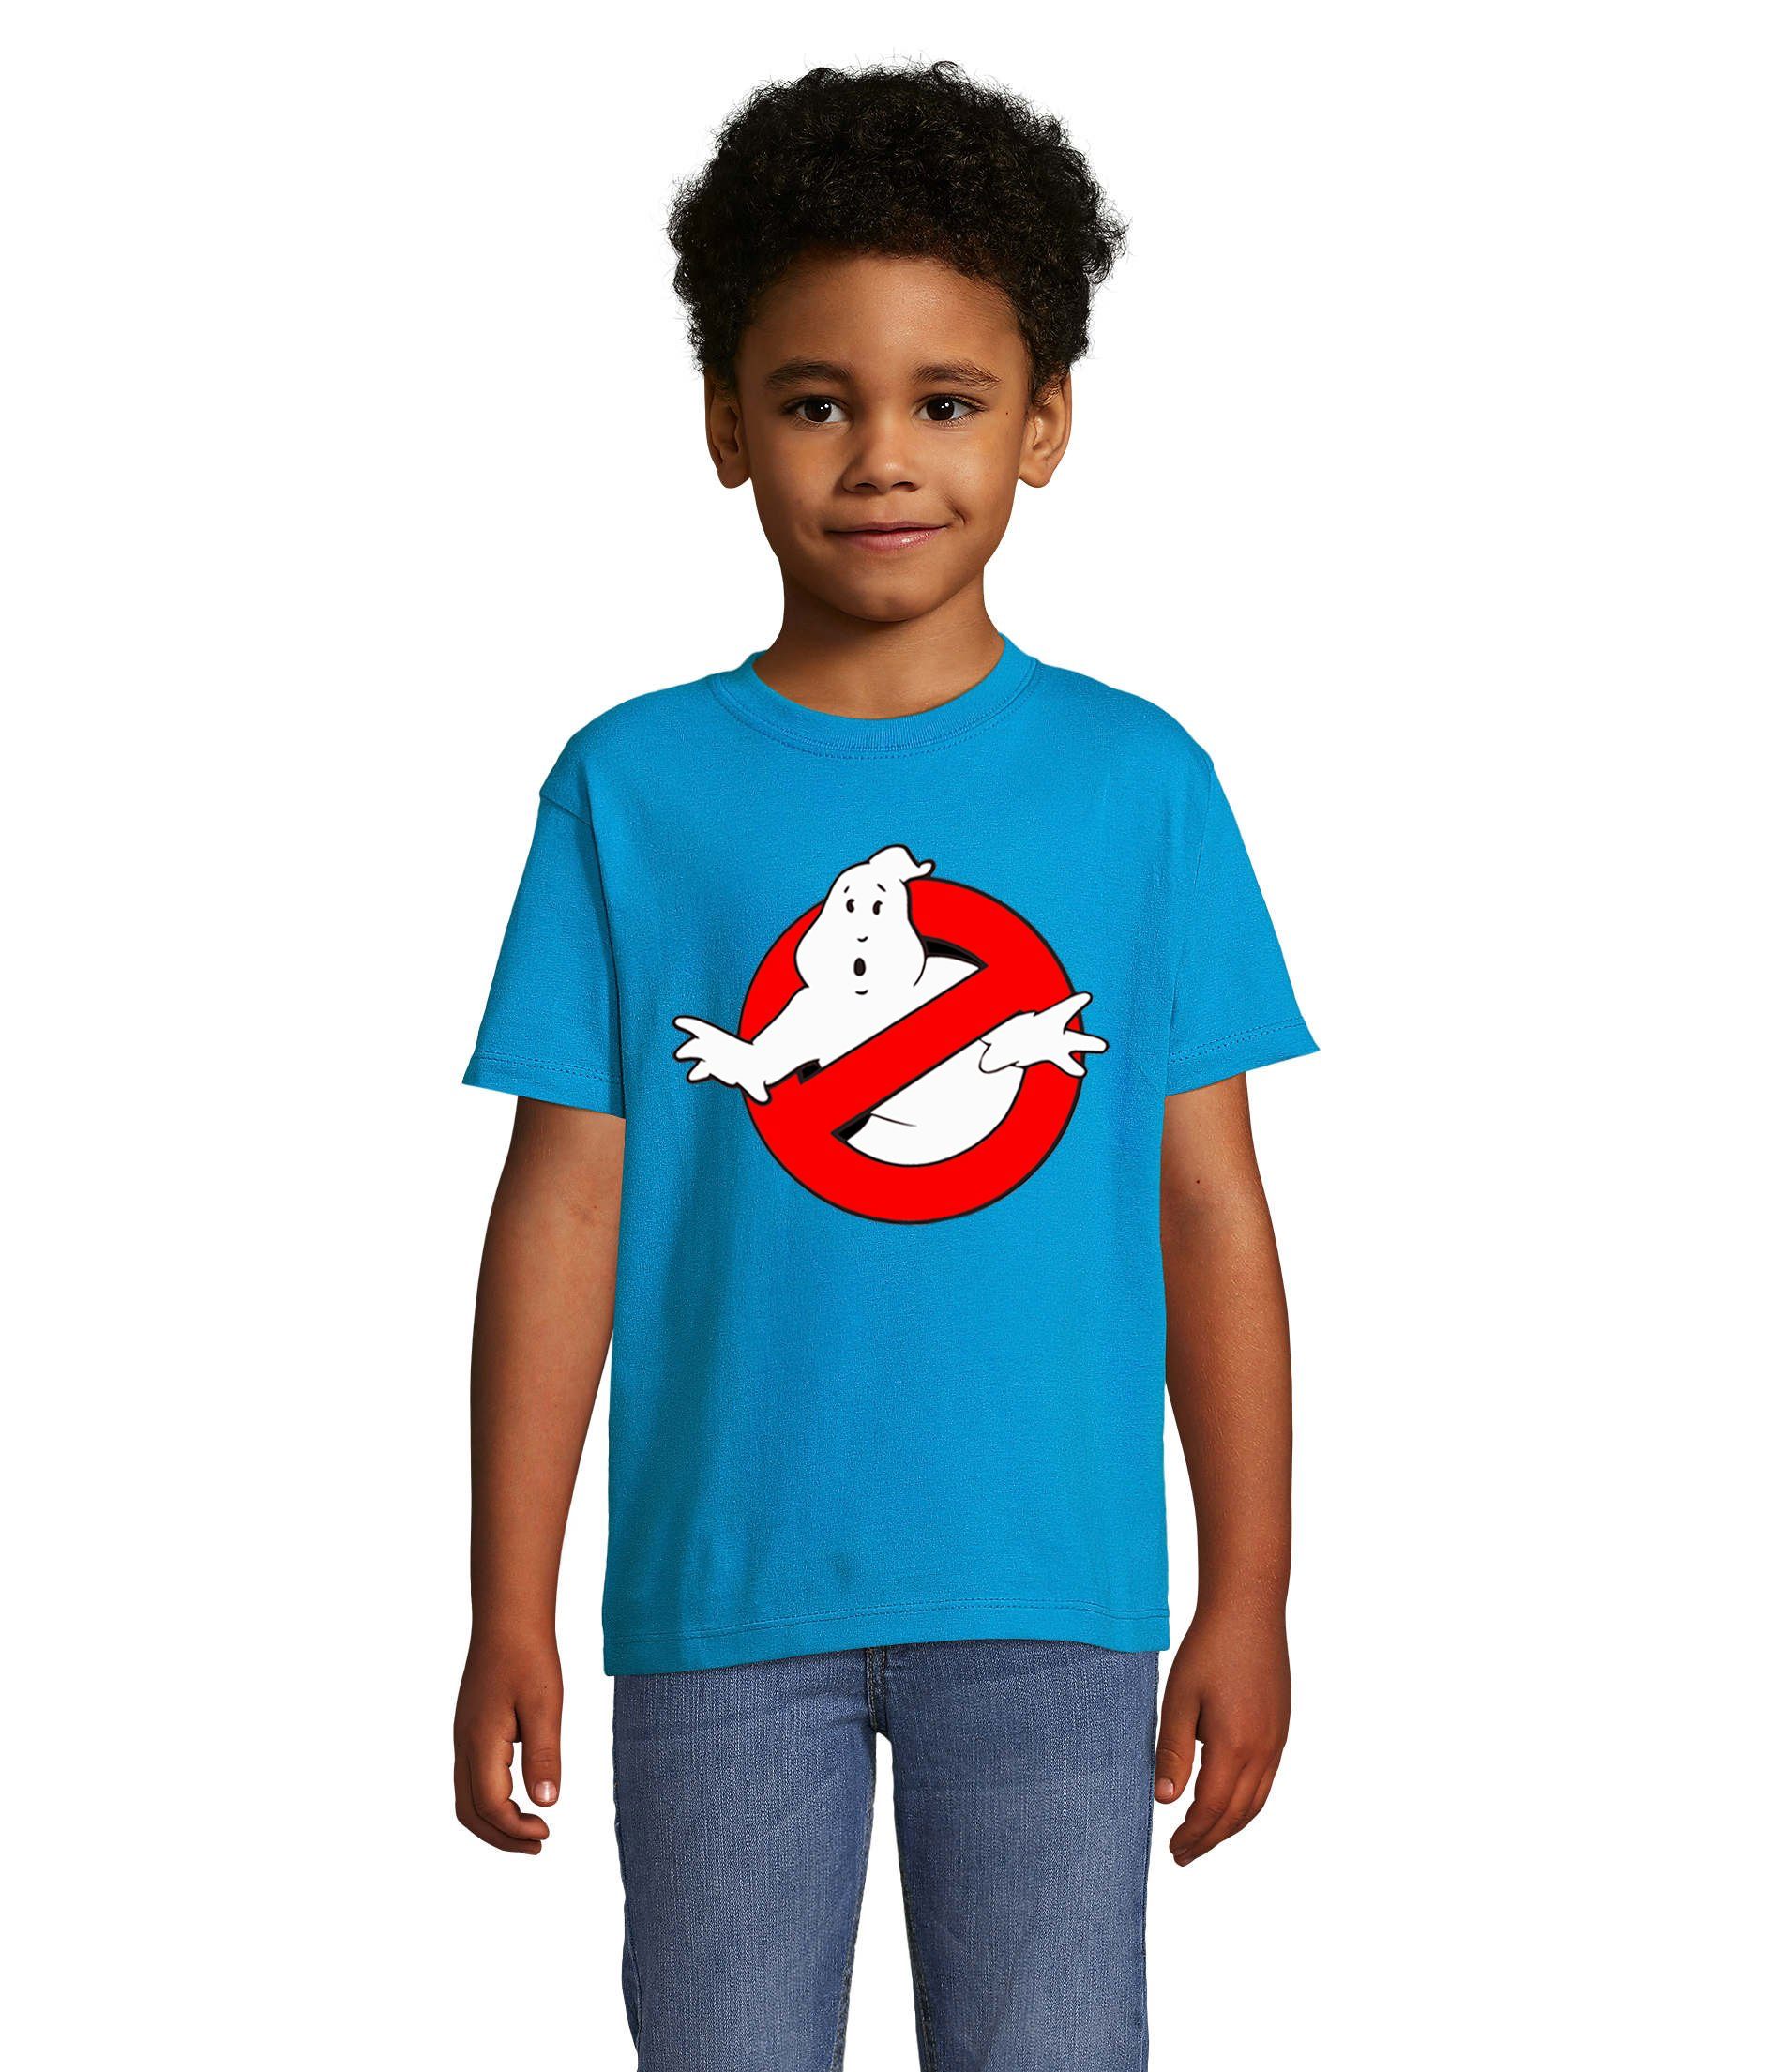 Blondie & Brownie T-Shirt Kinder Jungen & Mädchen Ghostbusters Ghost Geister Geisterjäger in vielen Farben Blau | T-Shirts